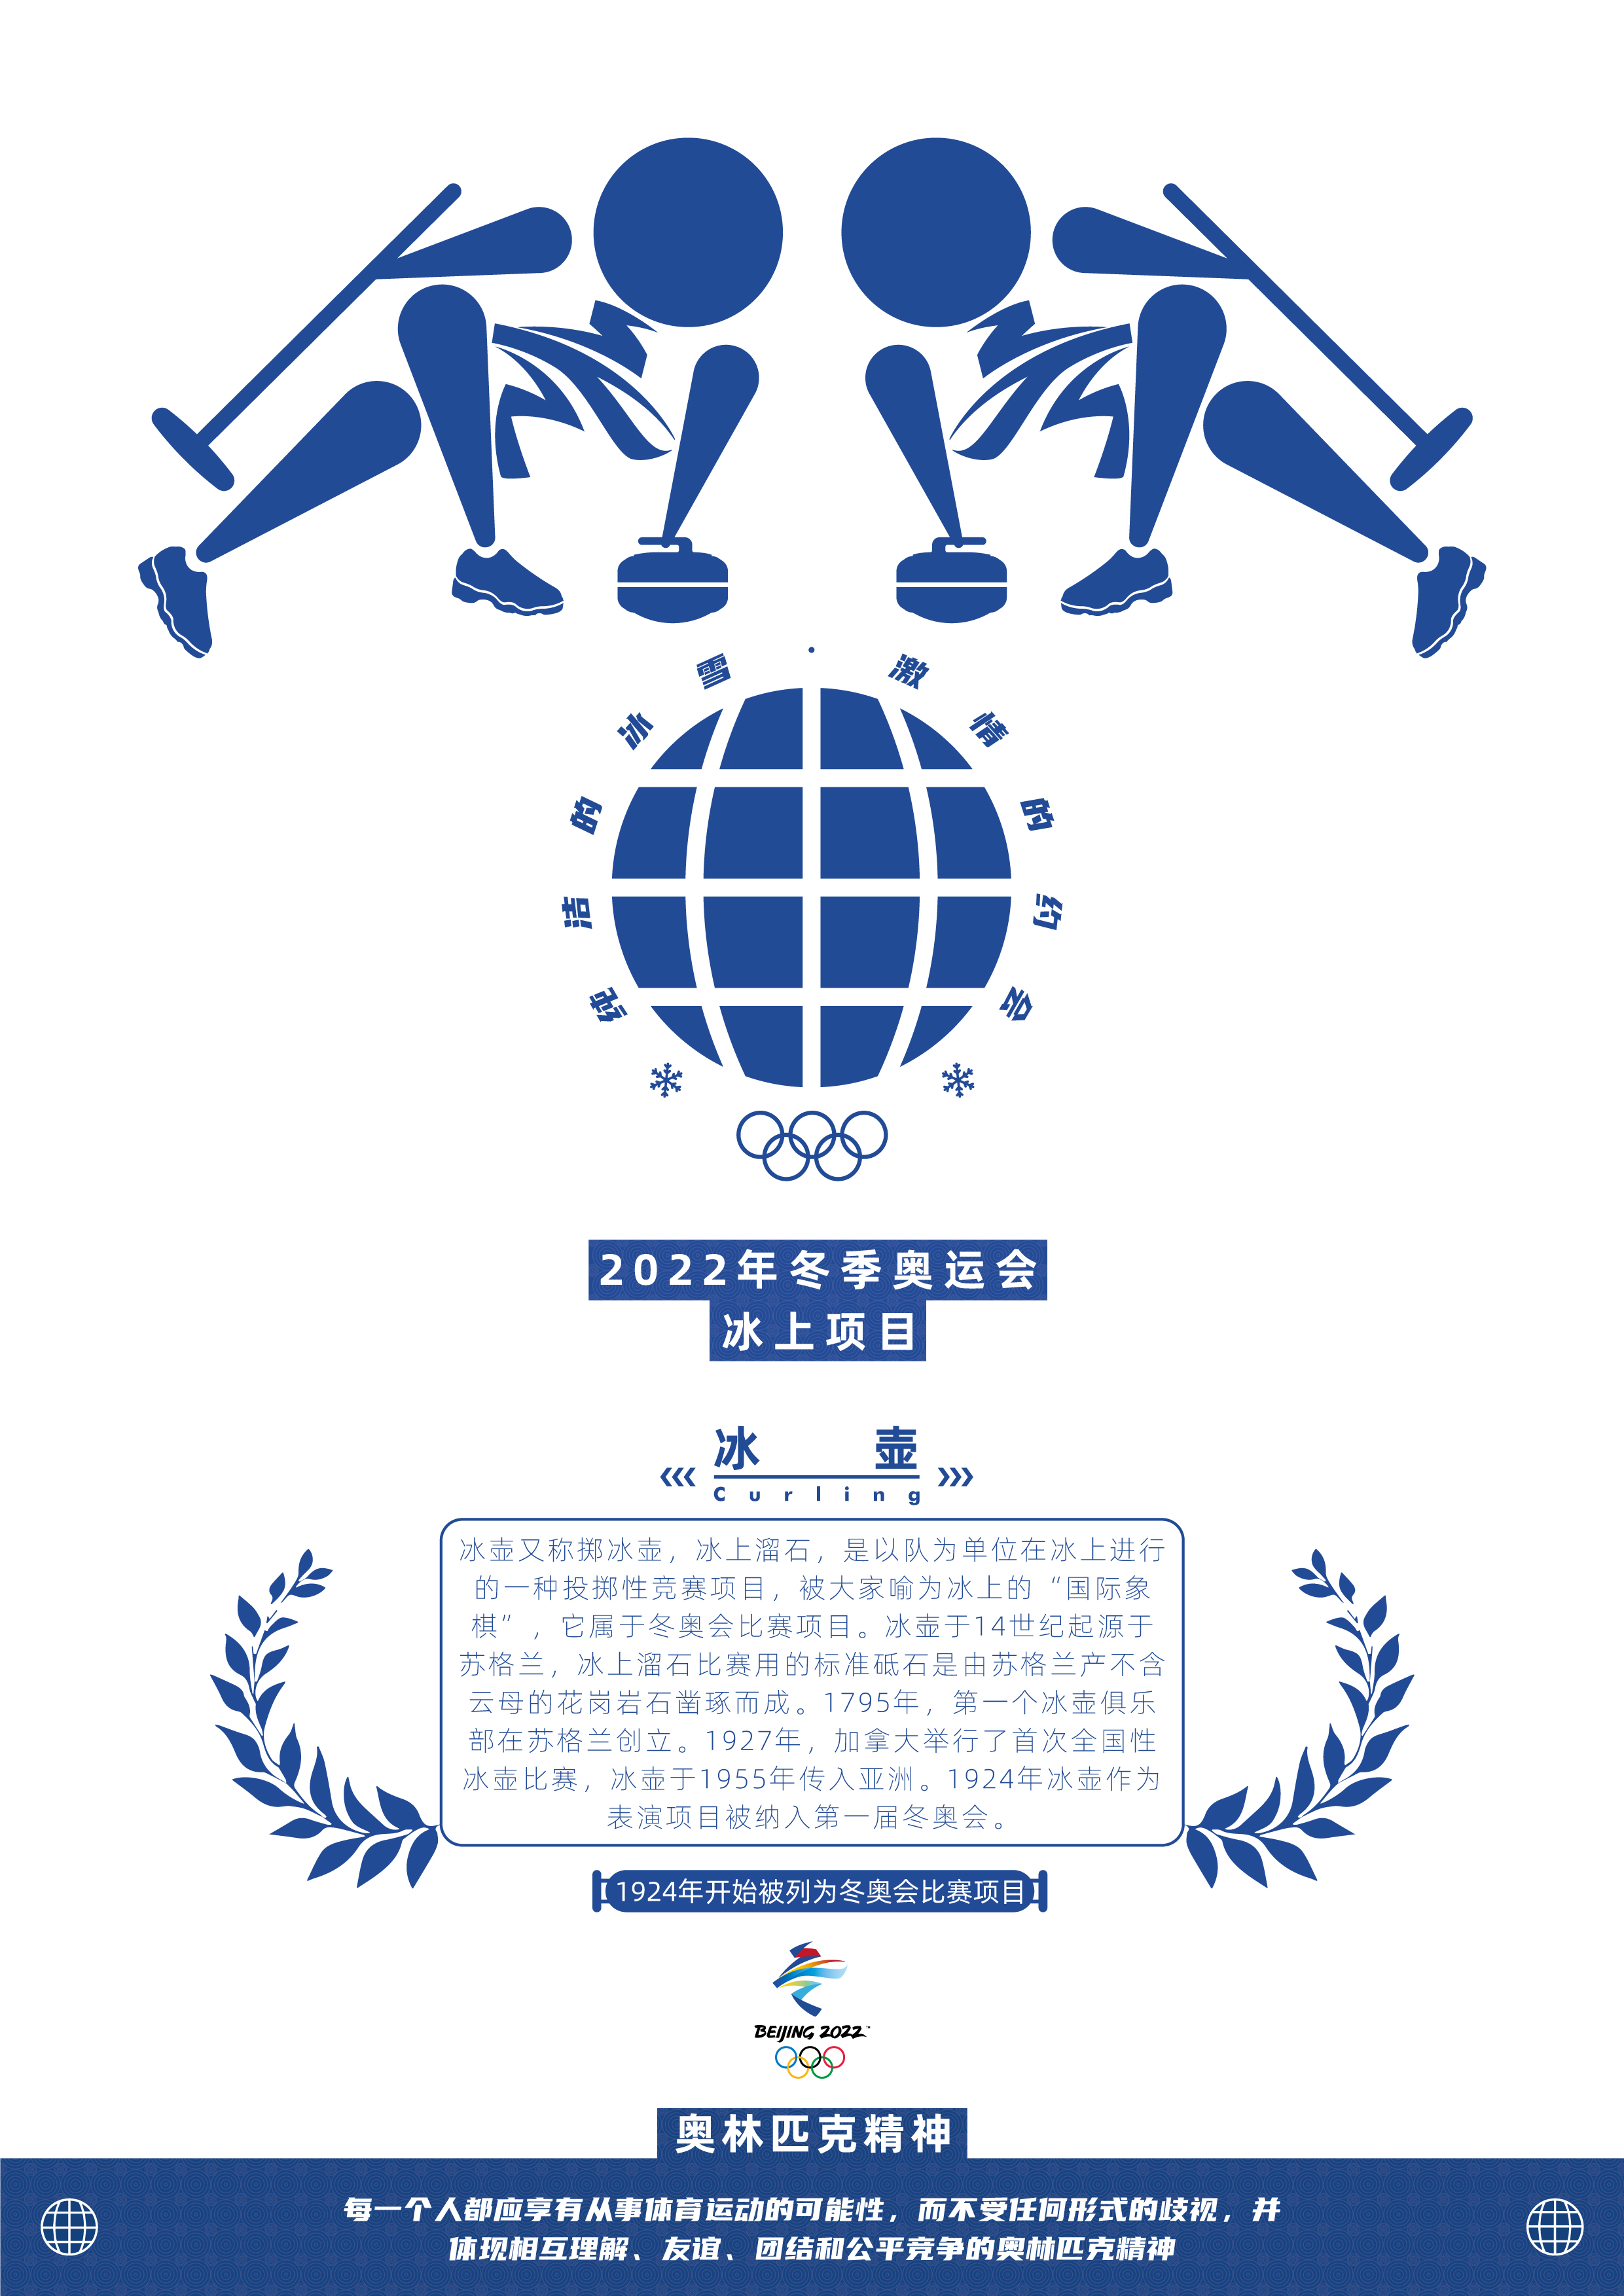 冬季奥运会海报简单图片